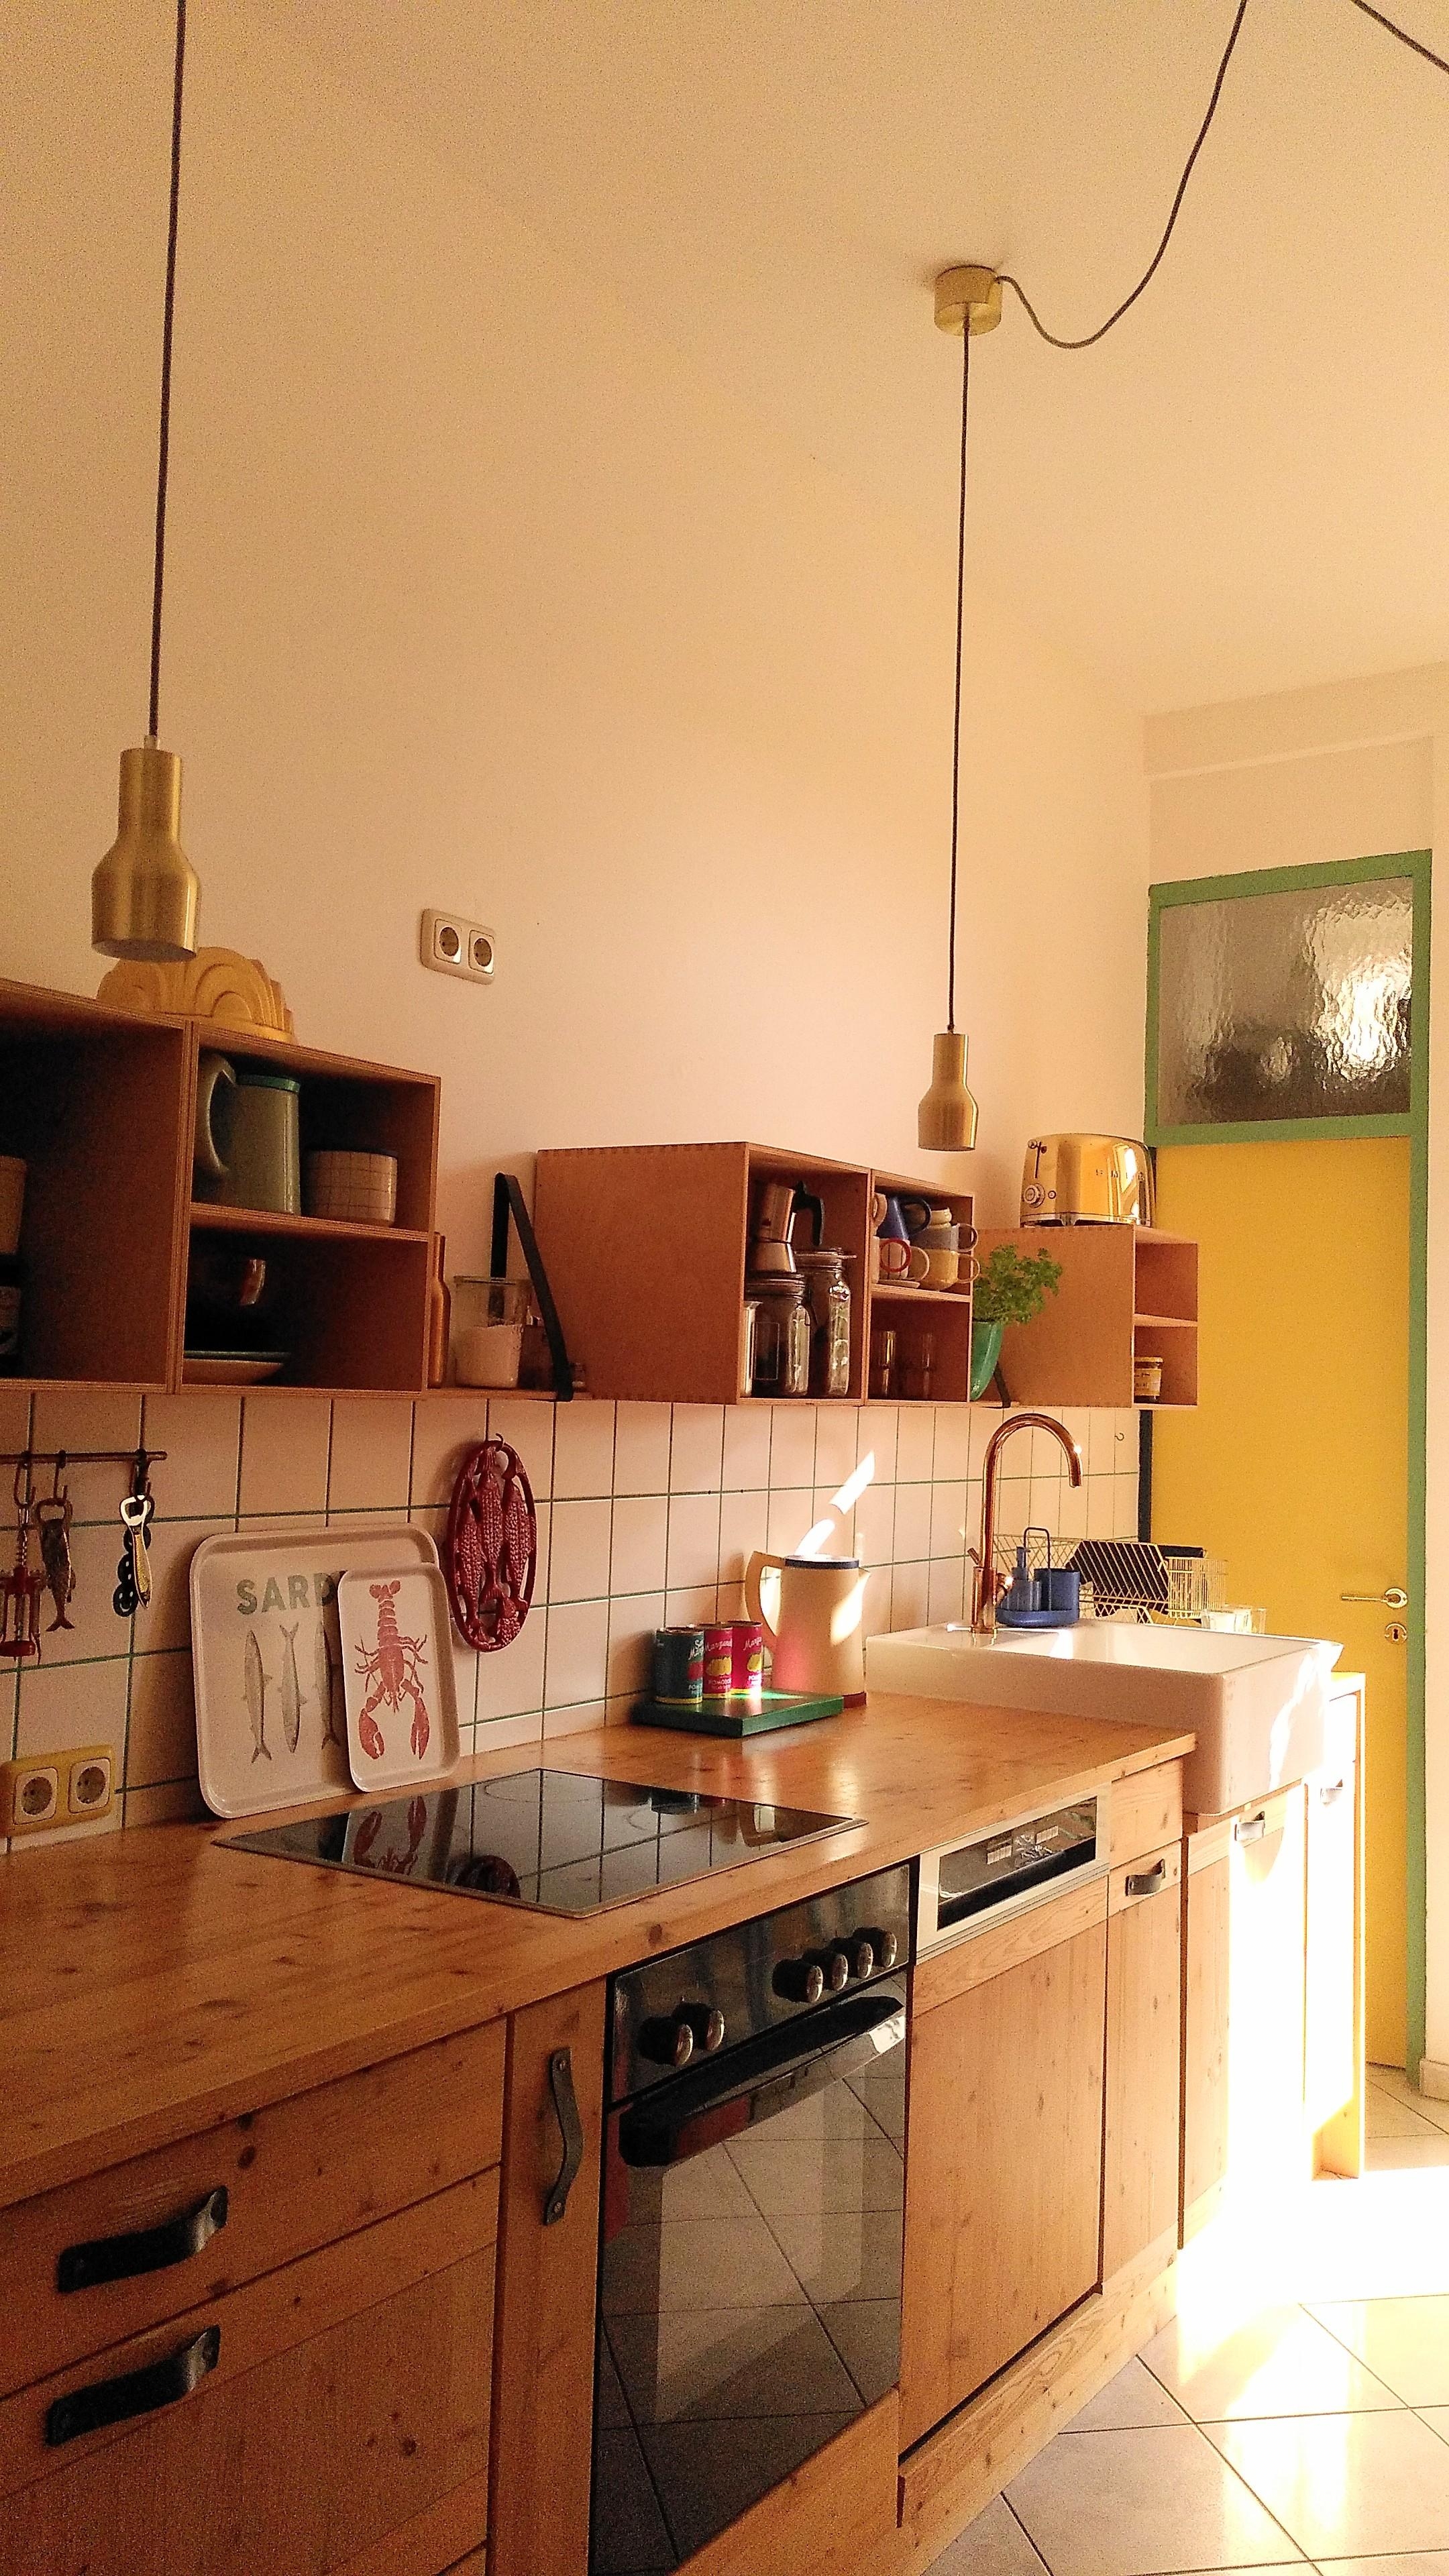 Das Licht in der #küche ist einfach traumhaft. #kitchenlove